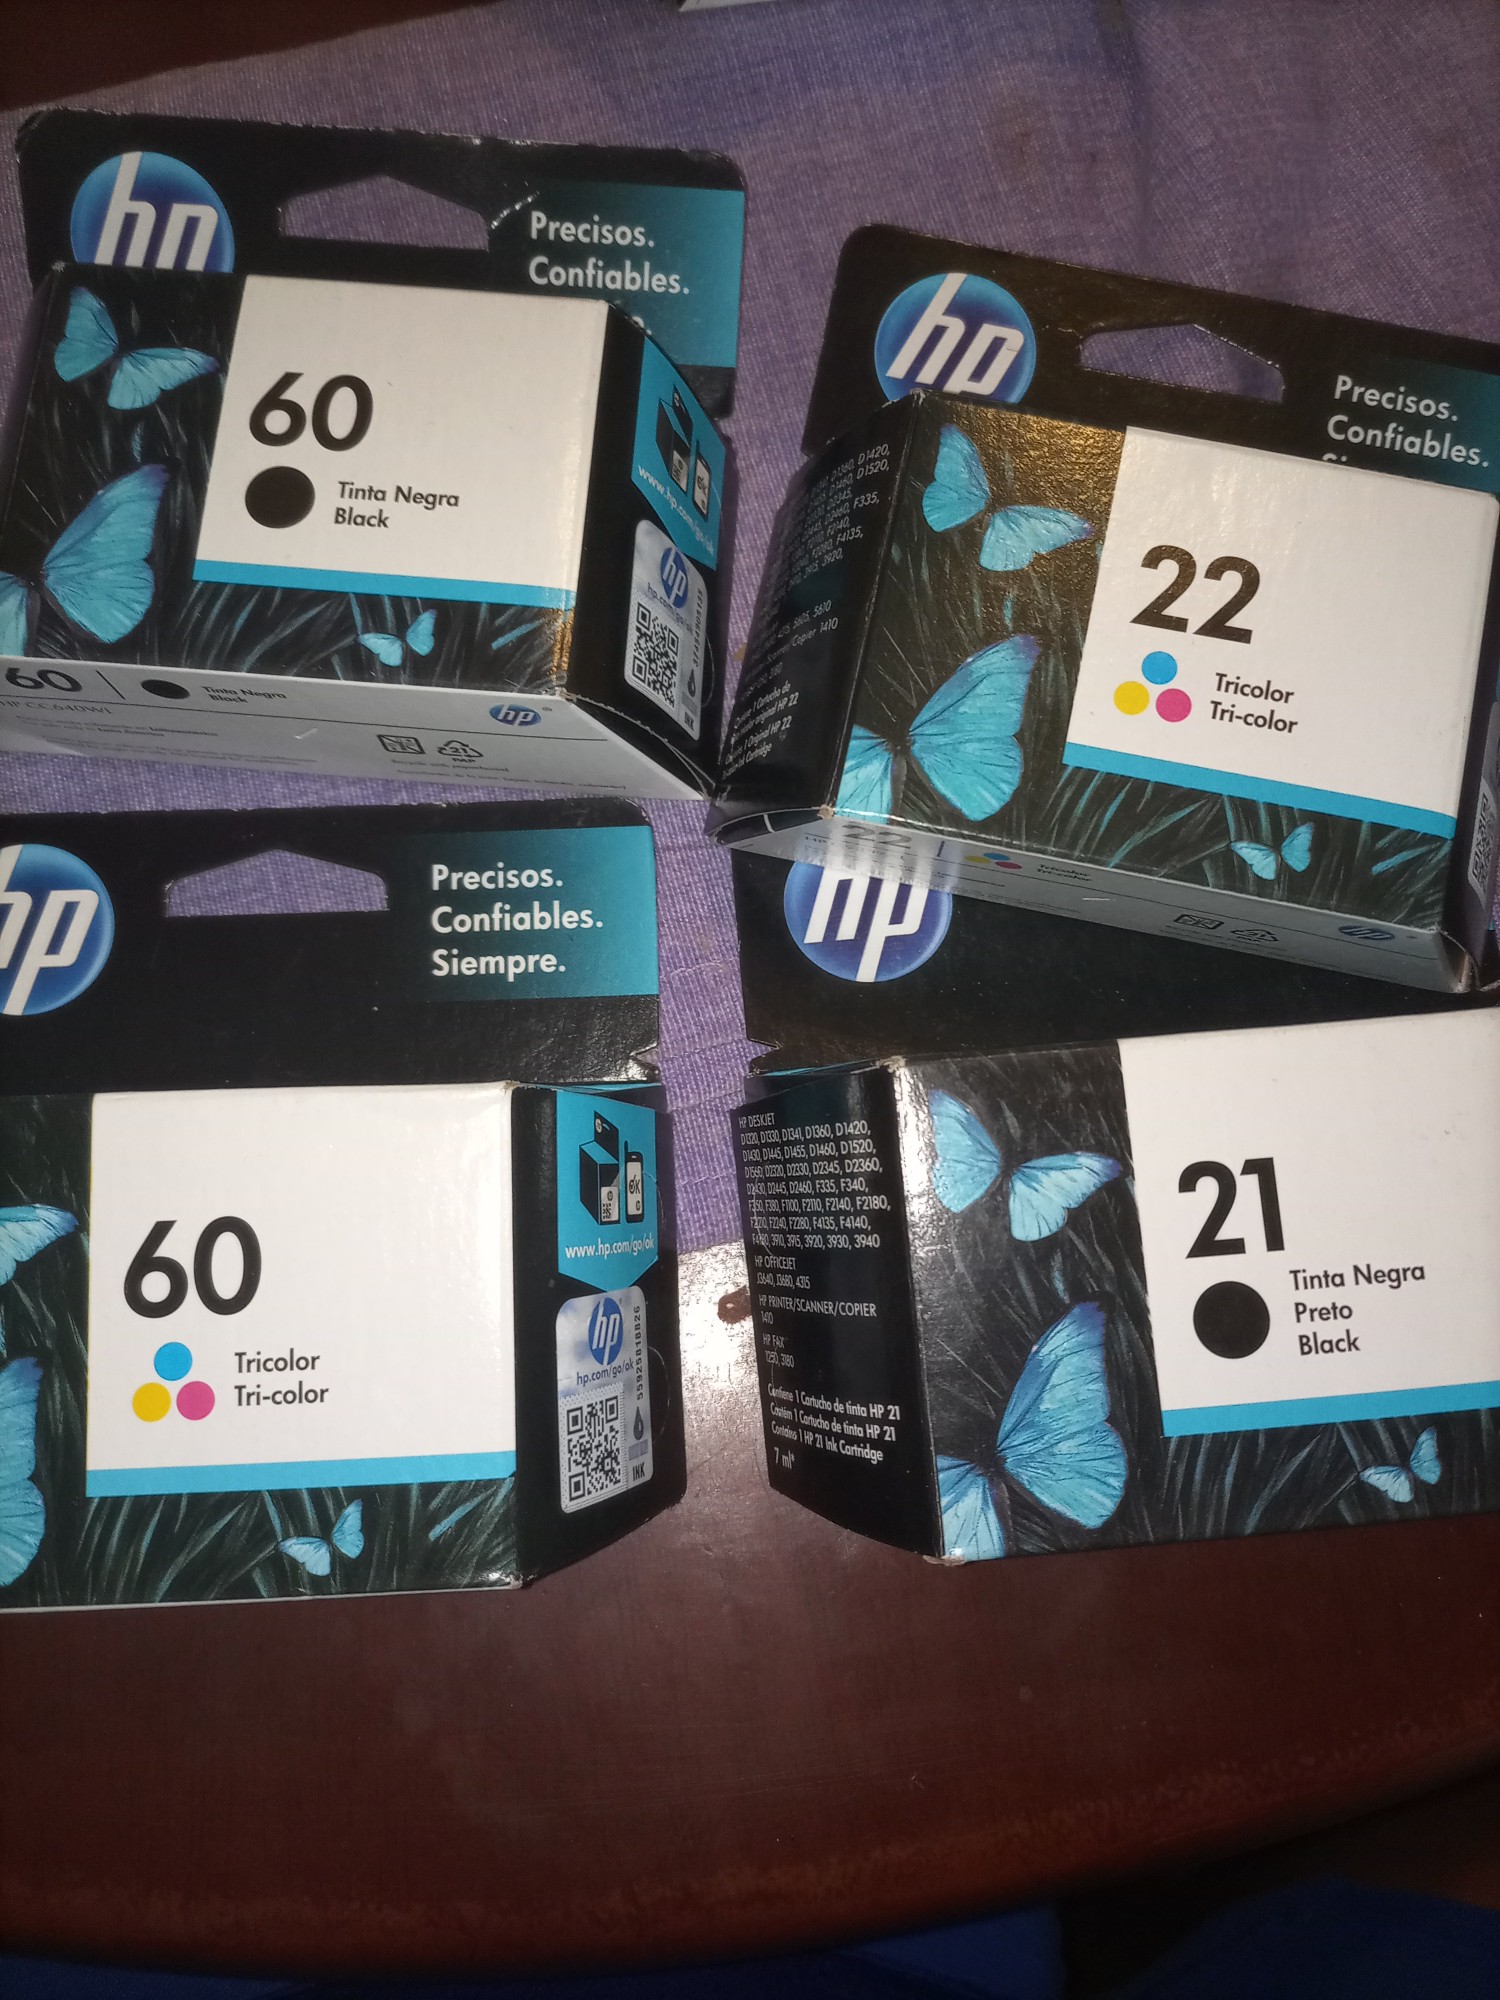 impresoras y scanners - Cartuchos HP 60
Cartuchos HP 21-22
